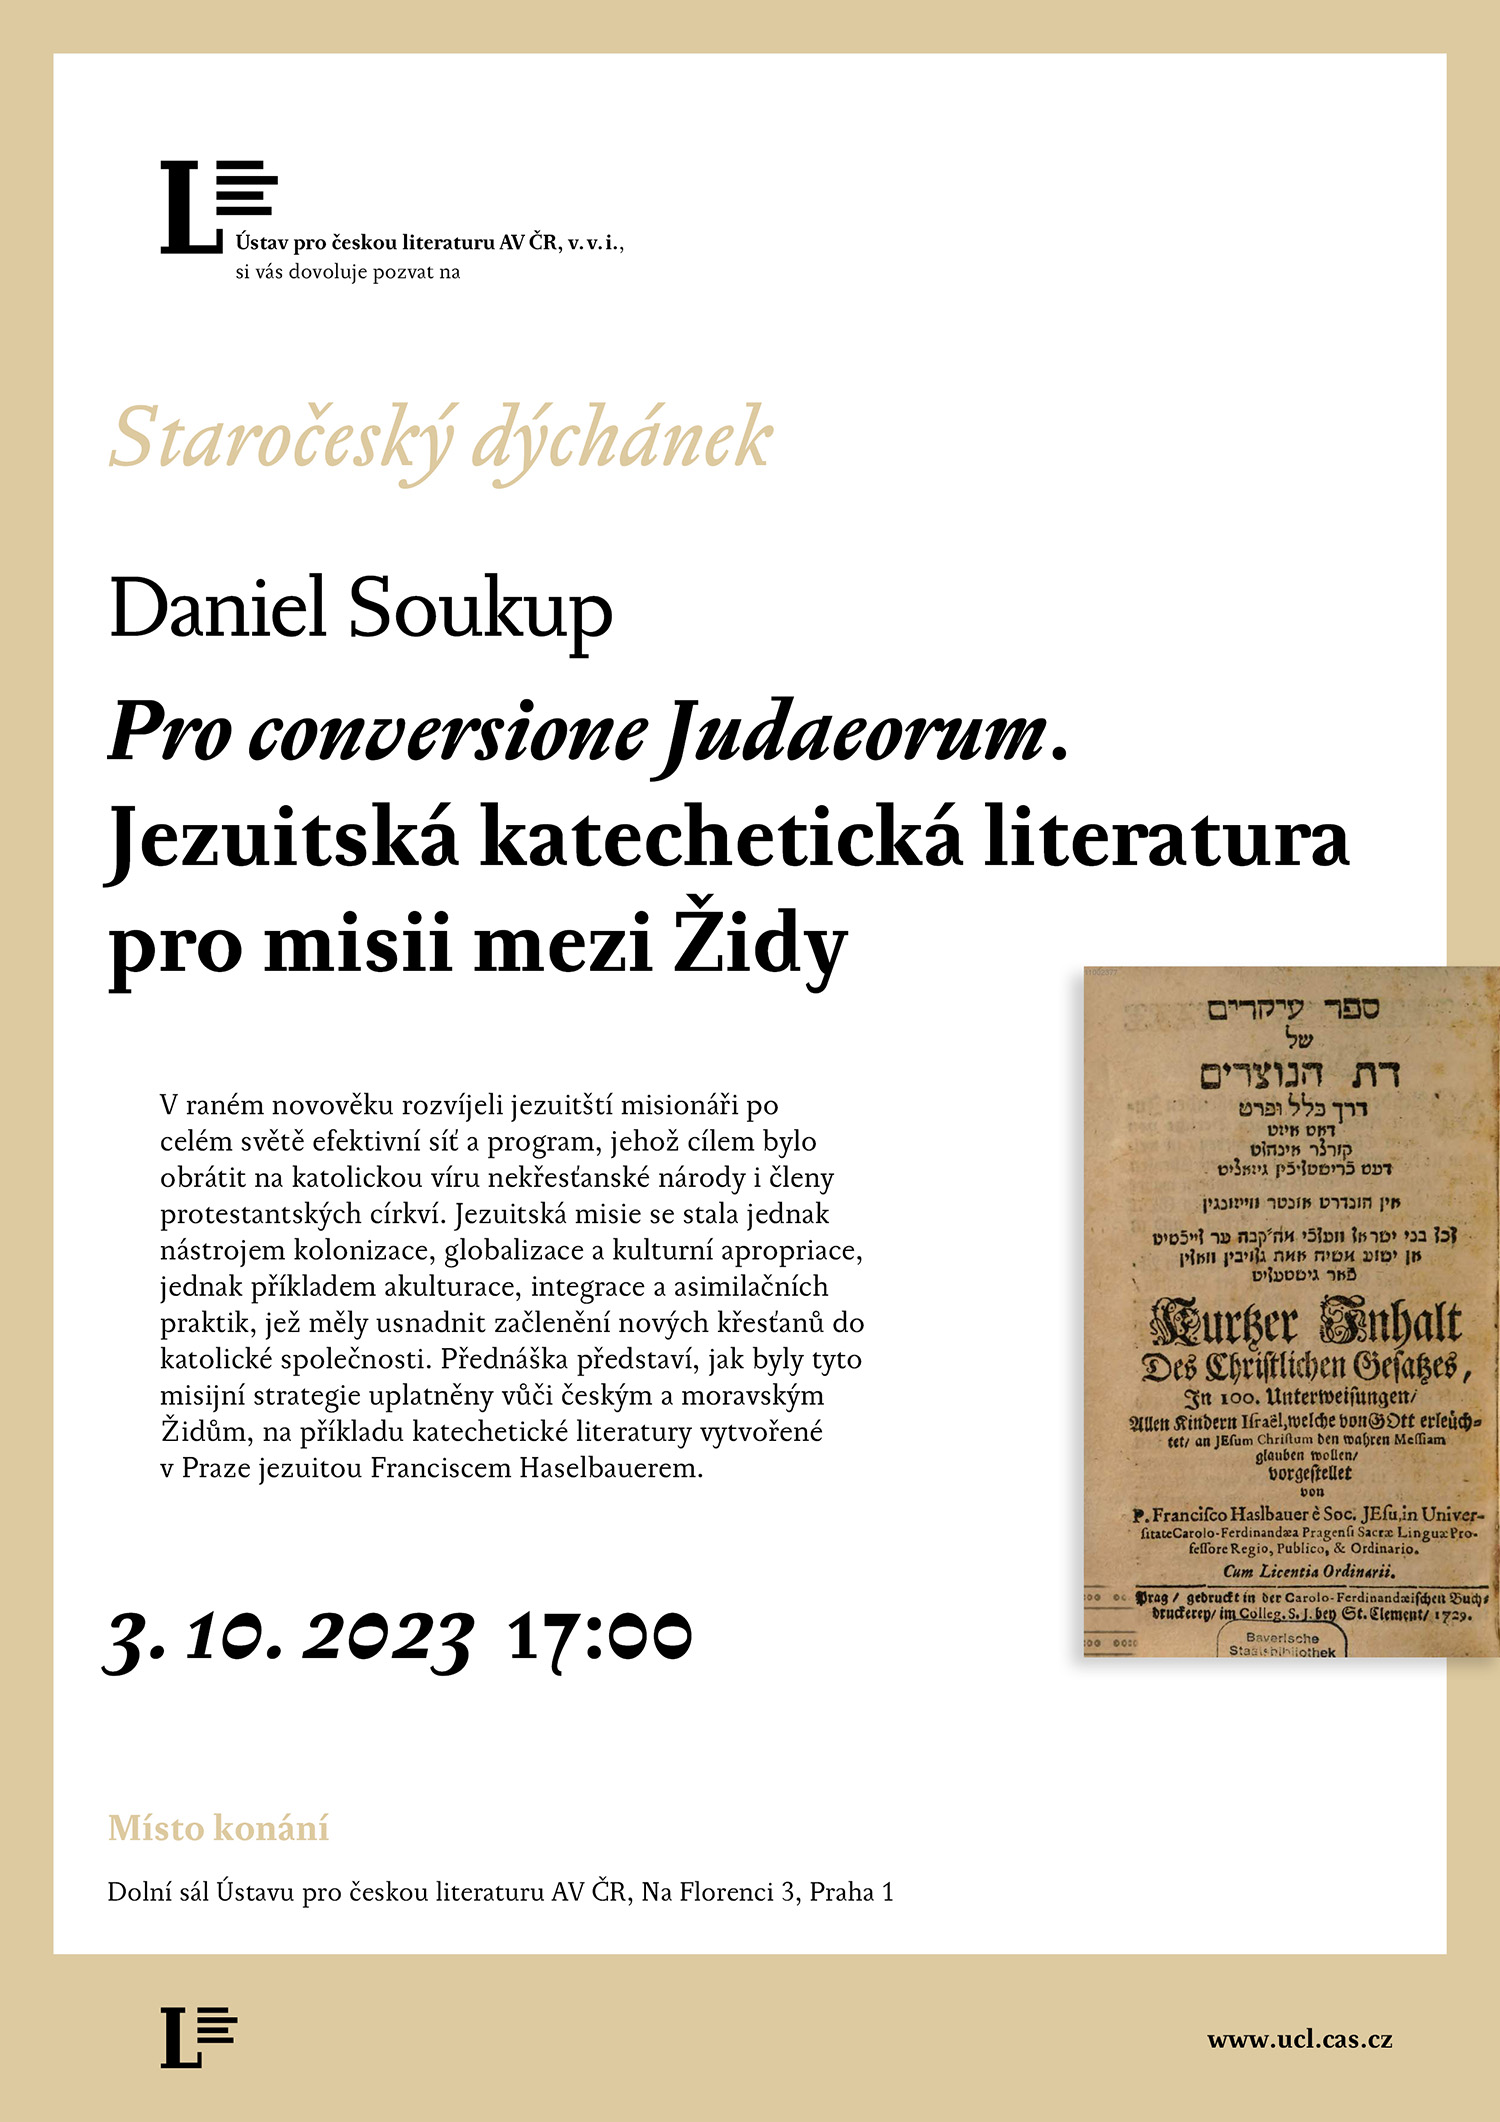 pozvánka – Daniel Soukup: ro conversione Judaeorum. Jezuitská katechetická literatura pro misii mezi Židy